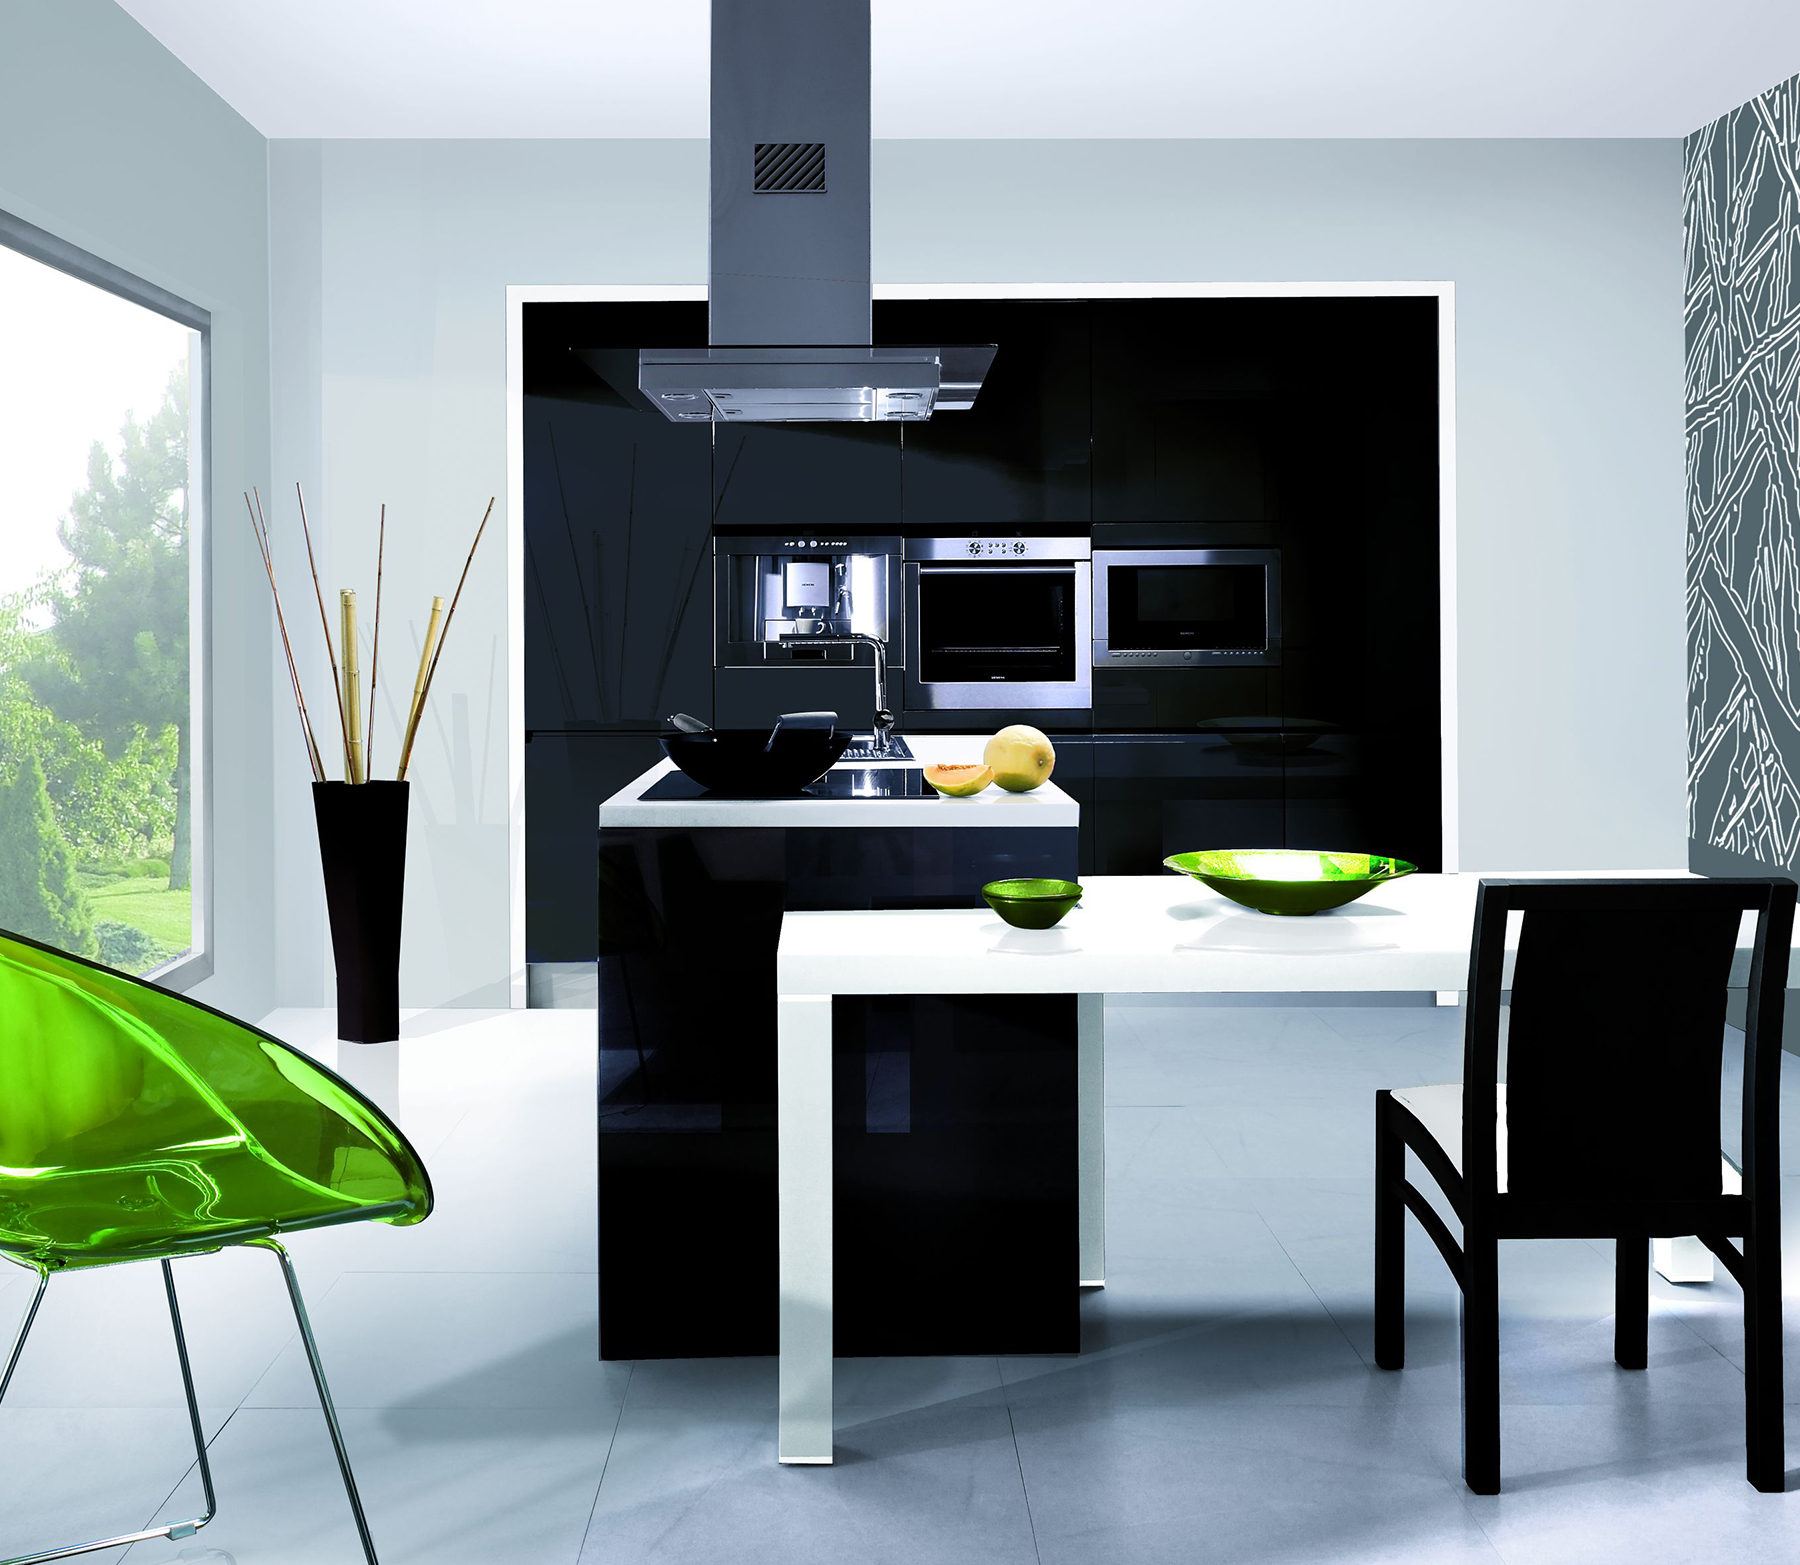 Черный стол на кухне. Кухня в стиле Хай тек. Черно белая кухня. Минимализм в интерьере кухни. Черная кухня в интерьере.